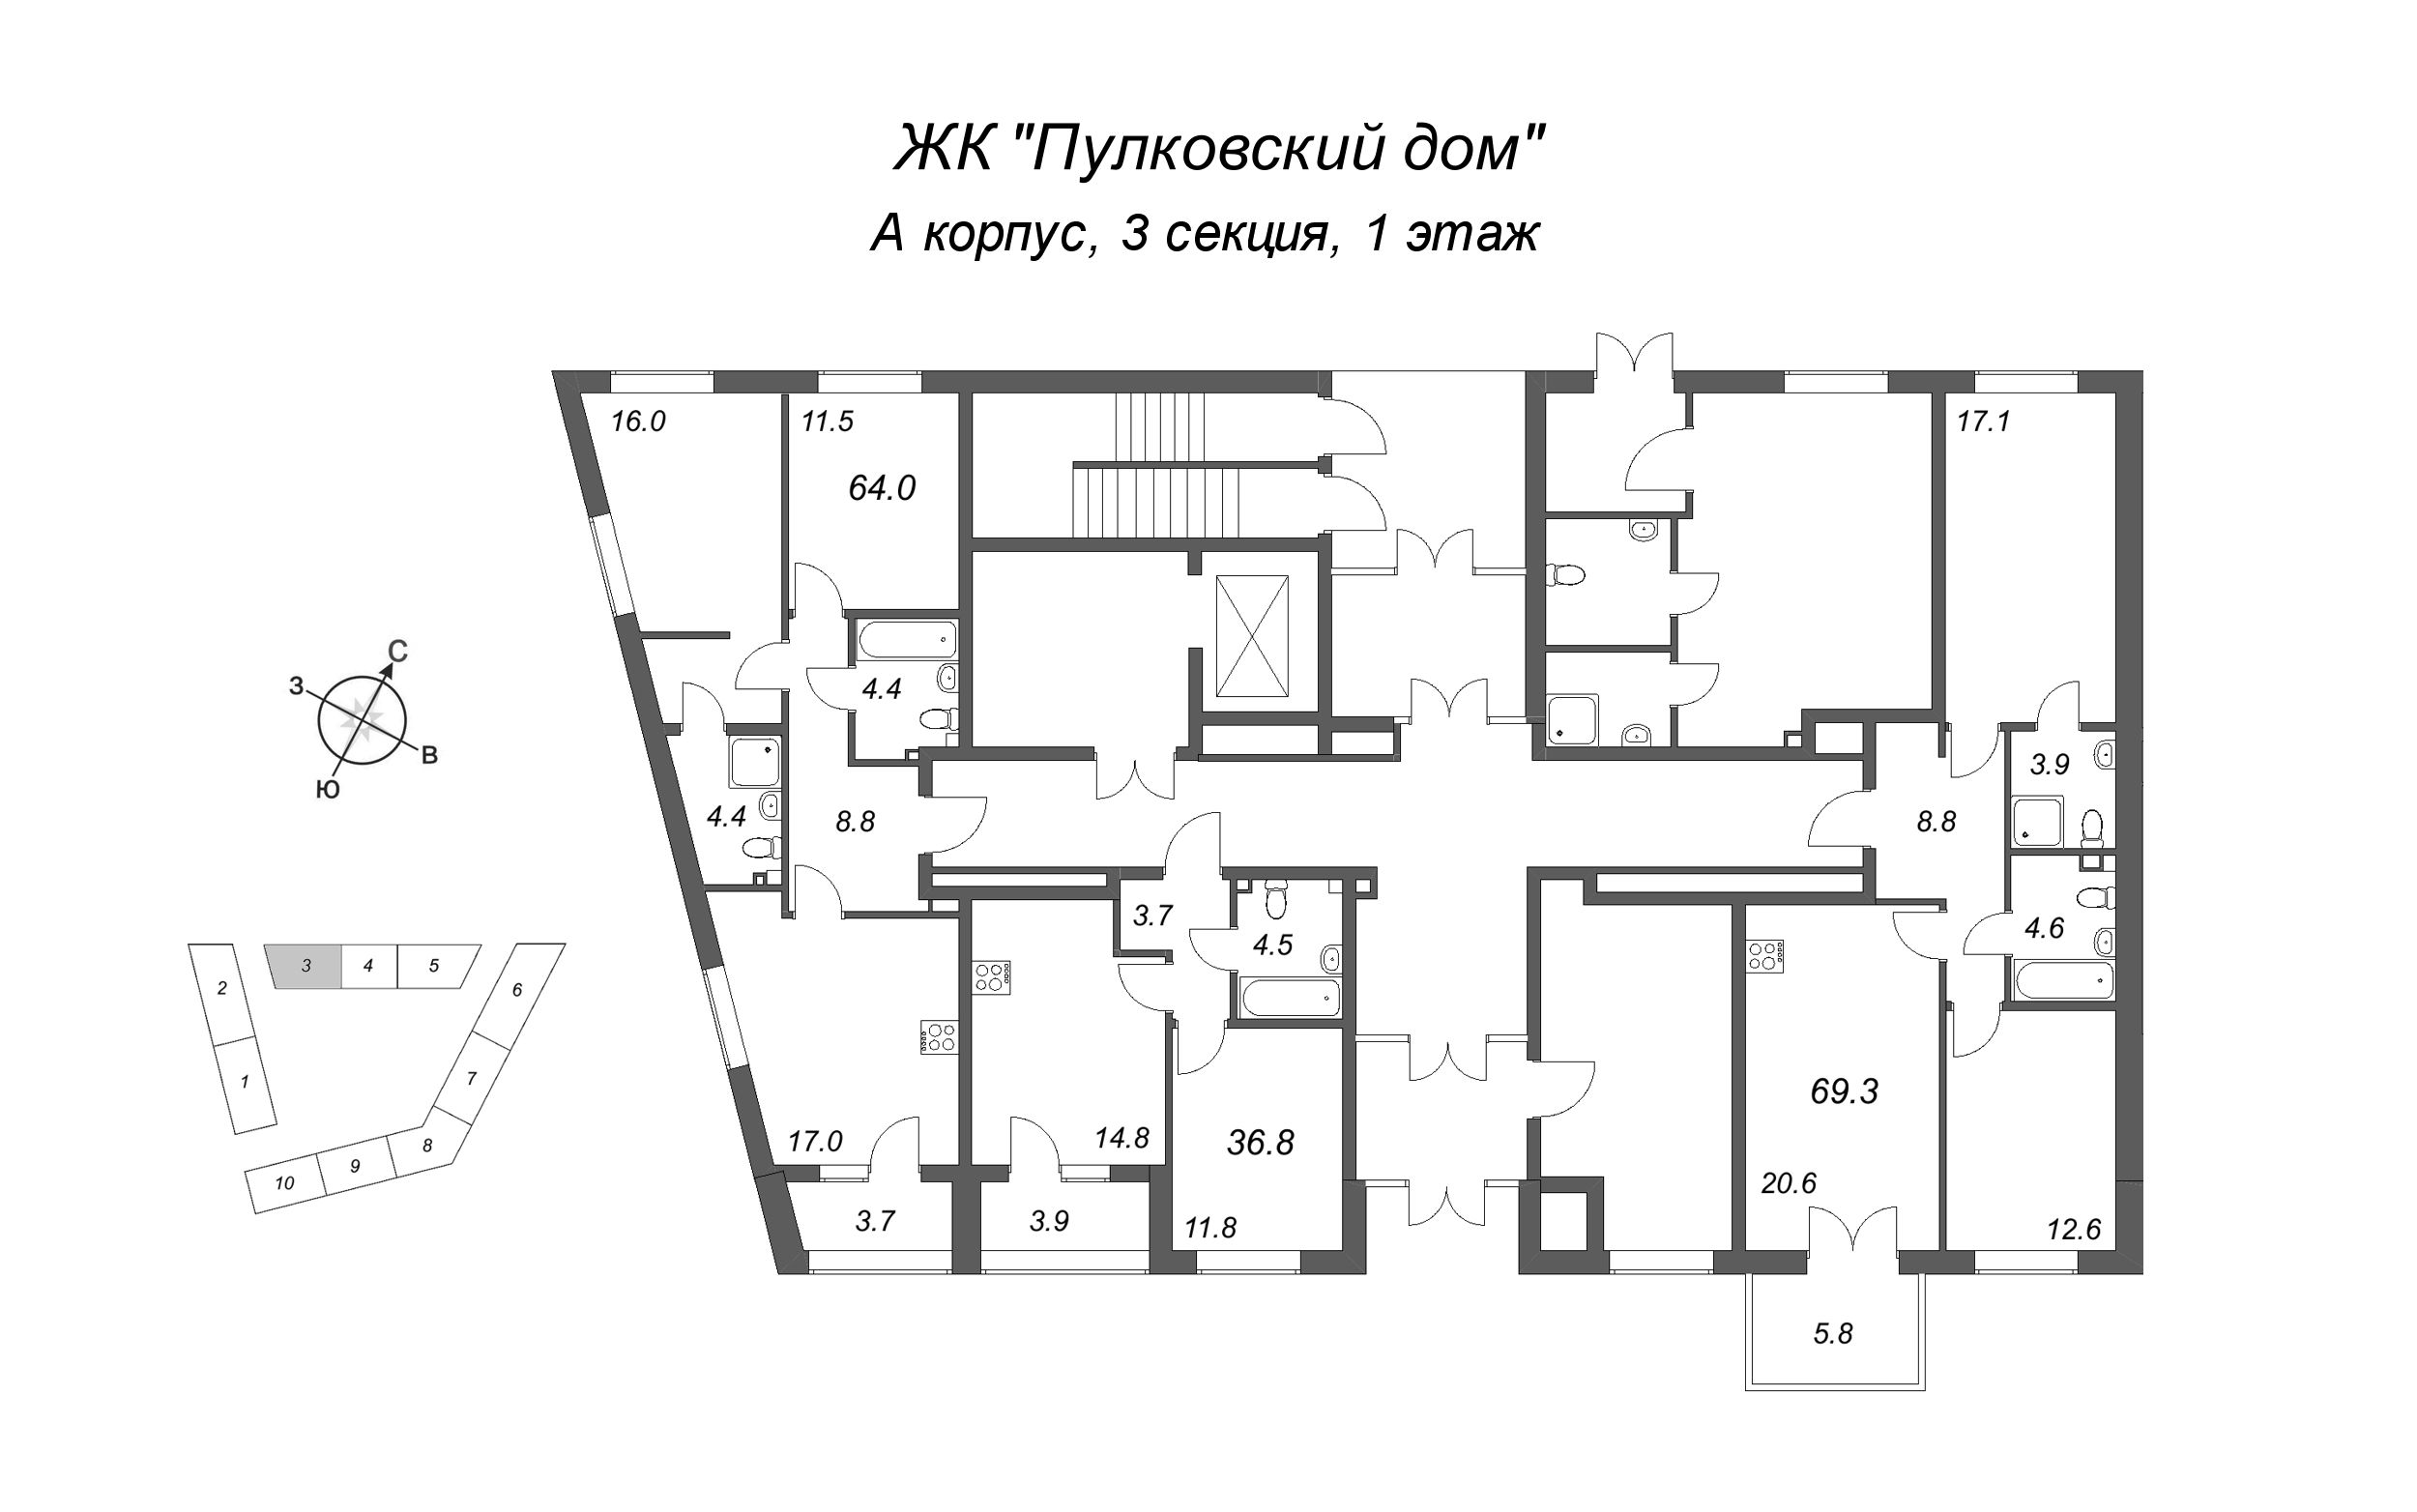 1-комнатная квартира, 36.8 м² в ЖК "Пулковский дом" - планировка этажа